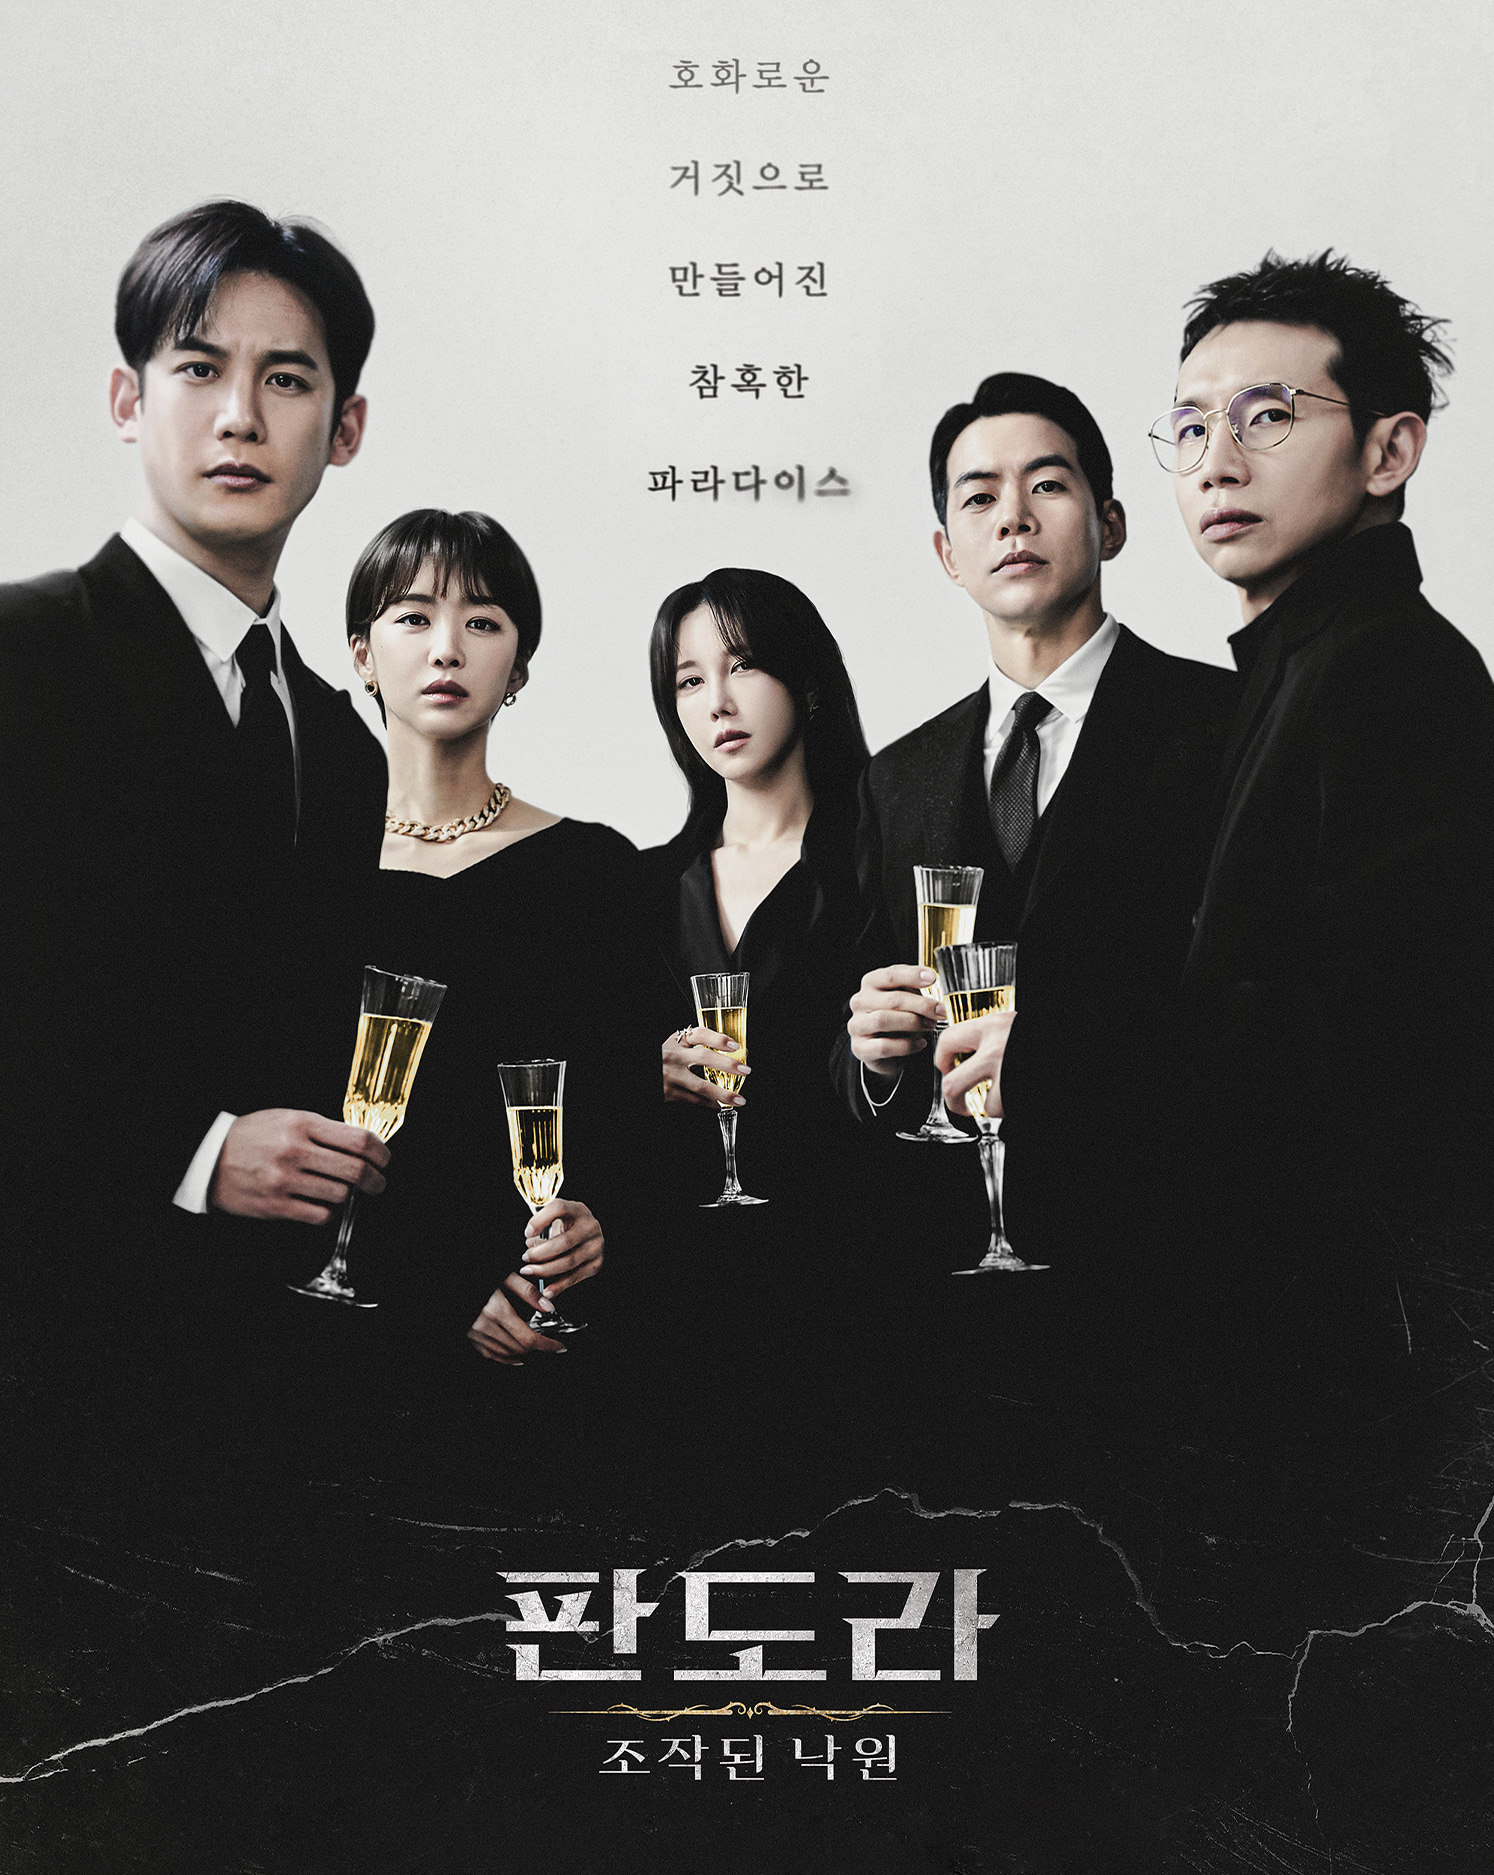 브릭나인 tvN 드라마 판도라: 조작된 낙원 공간연출